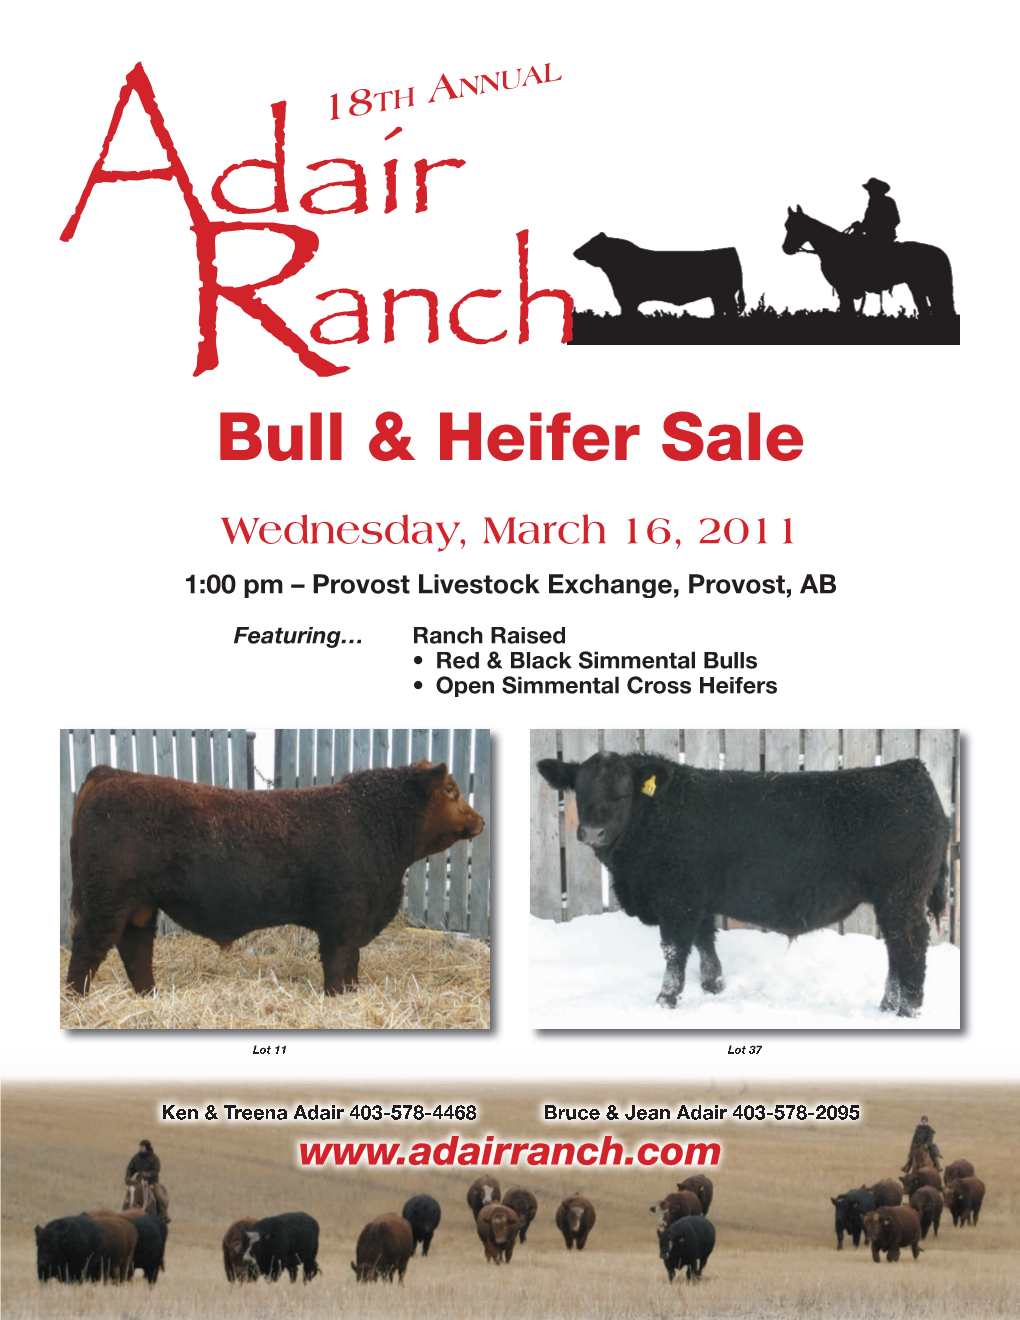 Bull & Heifer Sale